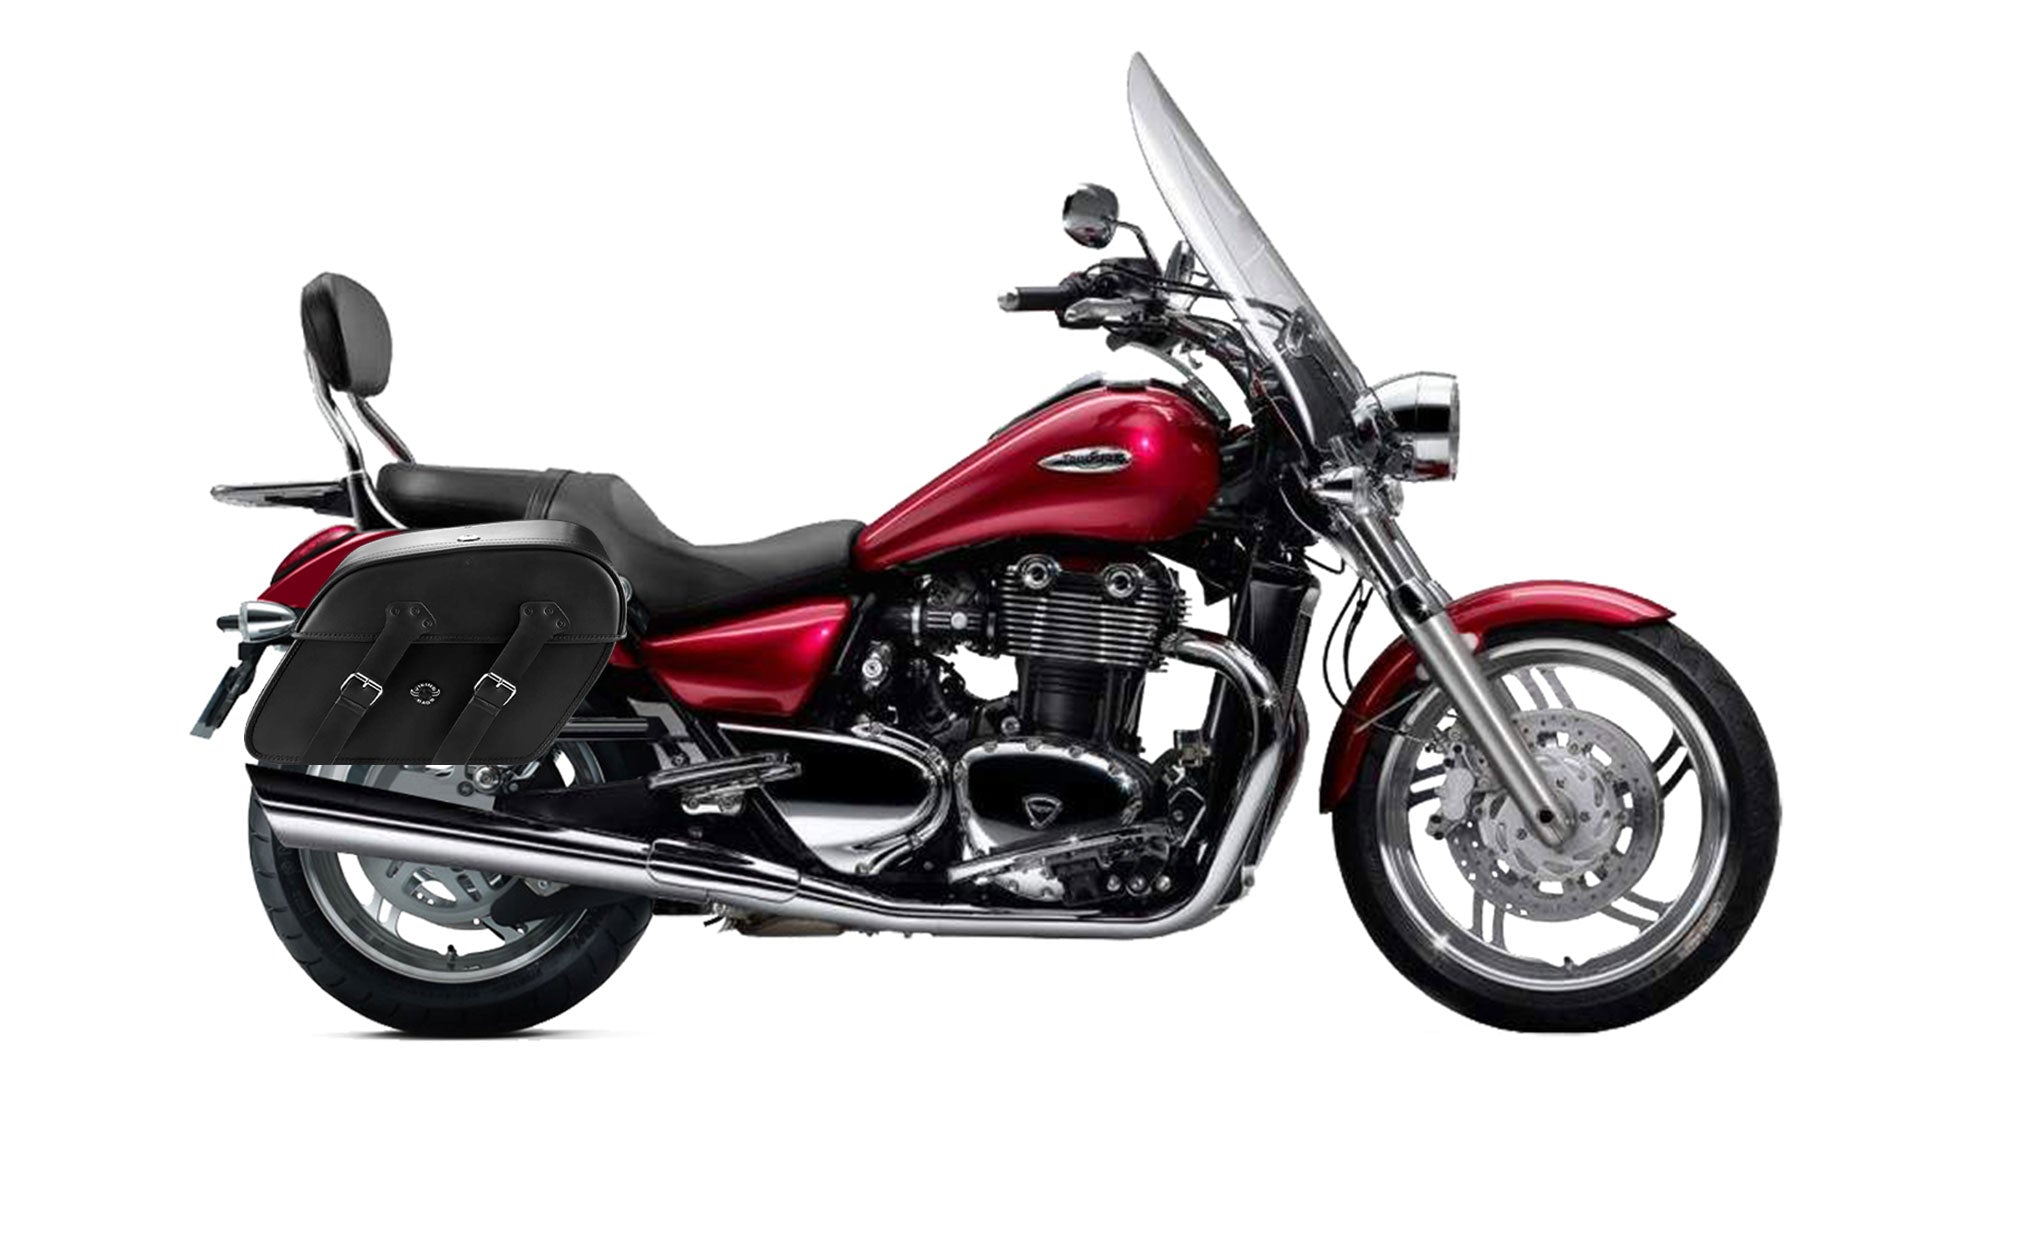 Viking Raven Extra Large Triumph Thunderbird Se Shock Cut Out Leather Motorcycle Saddlebags on Bike Photo @expand